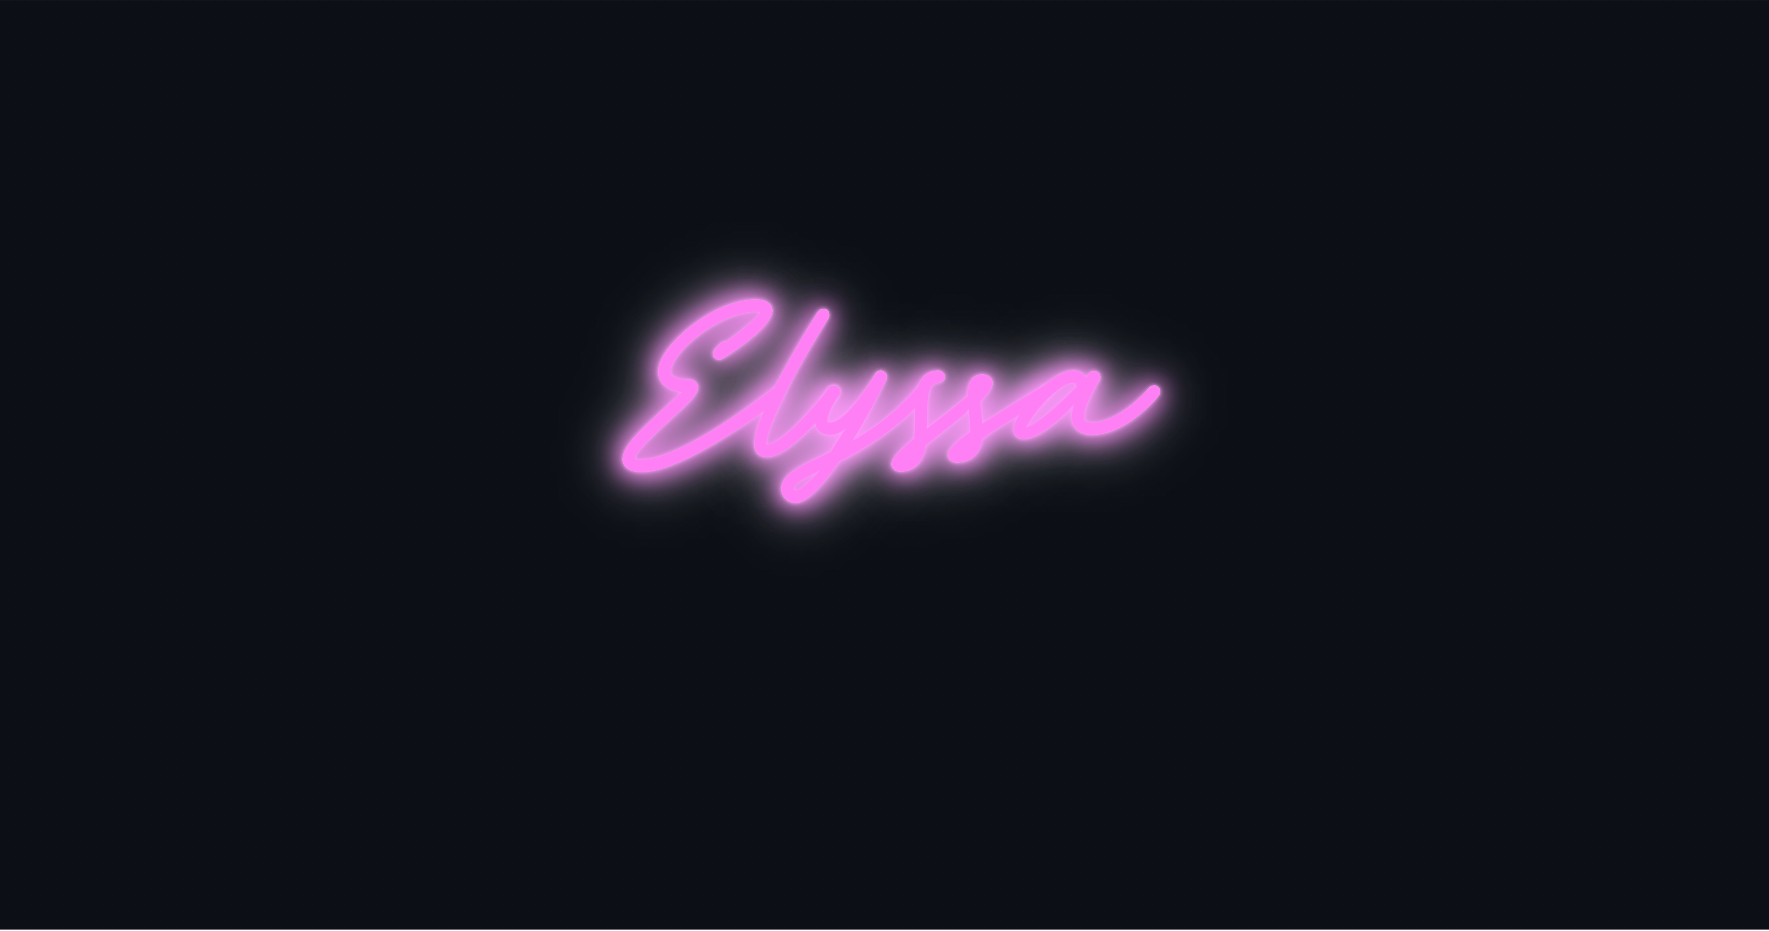 Custom neon sign - Elyssa